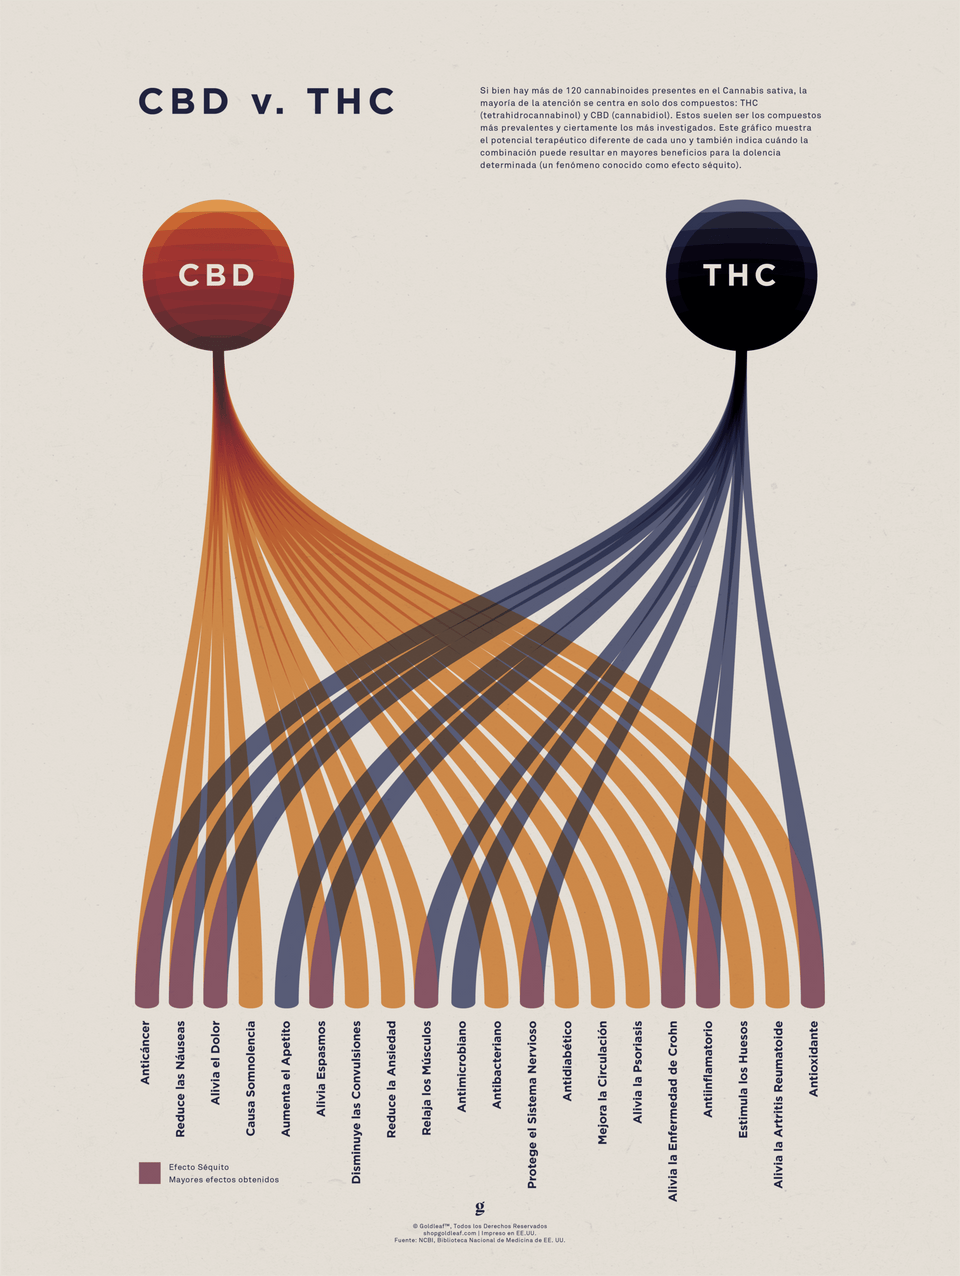 Tabla Comparativa de CBD vs. THC